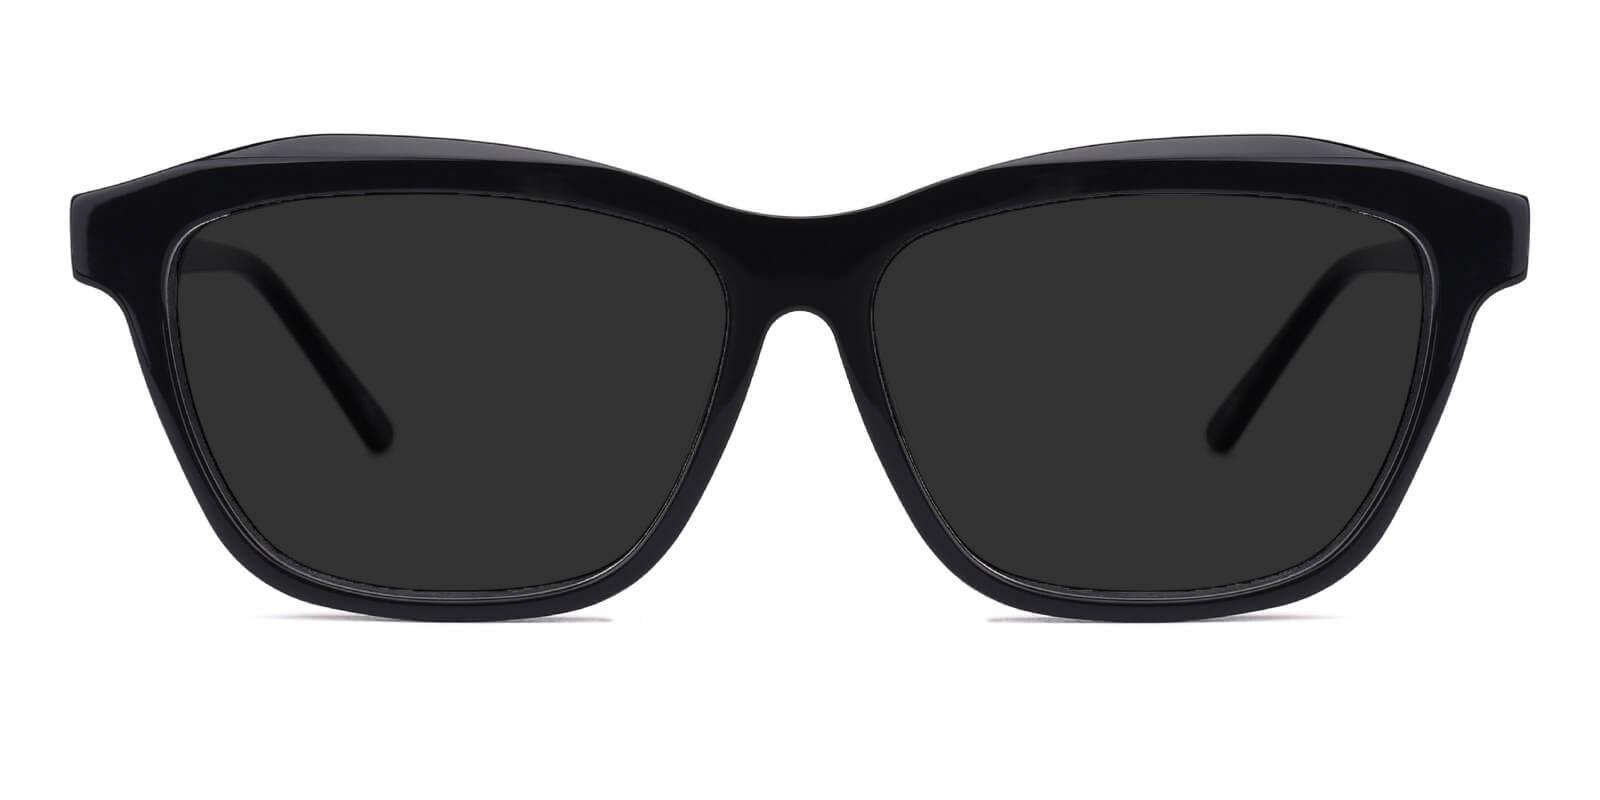 Morning Black Acetate SpringHinges , Sunglasses , UniversalBridgeFit Frames from ABBE Glasses